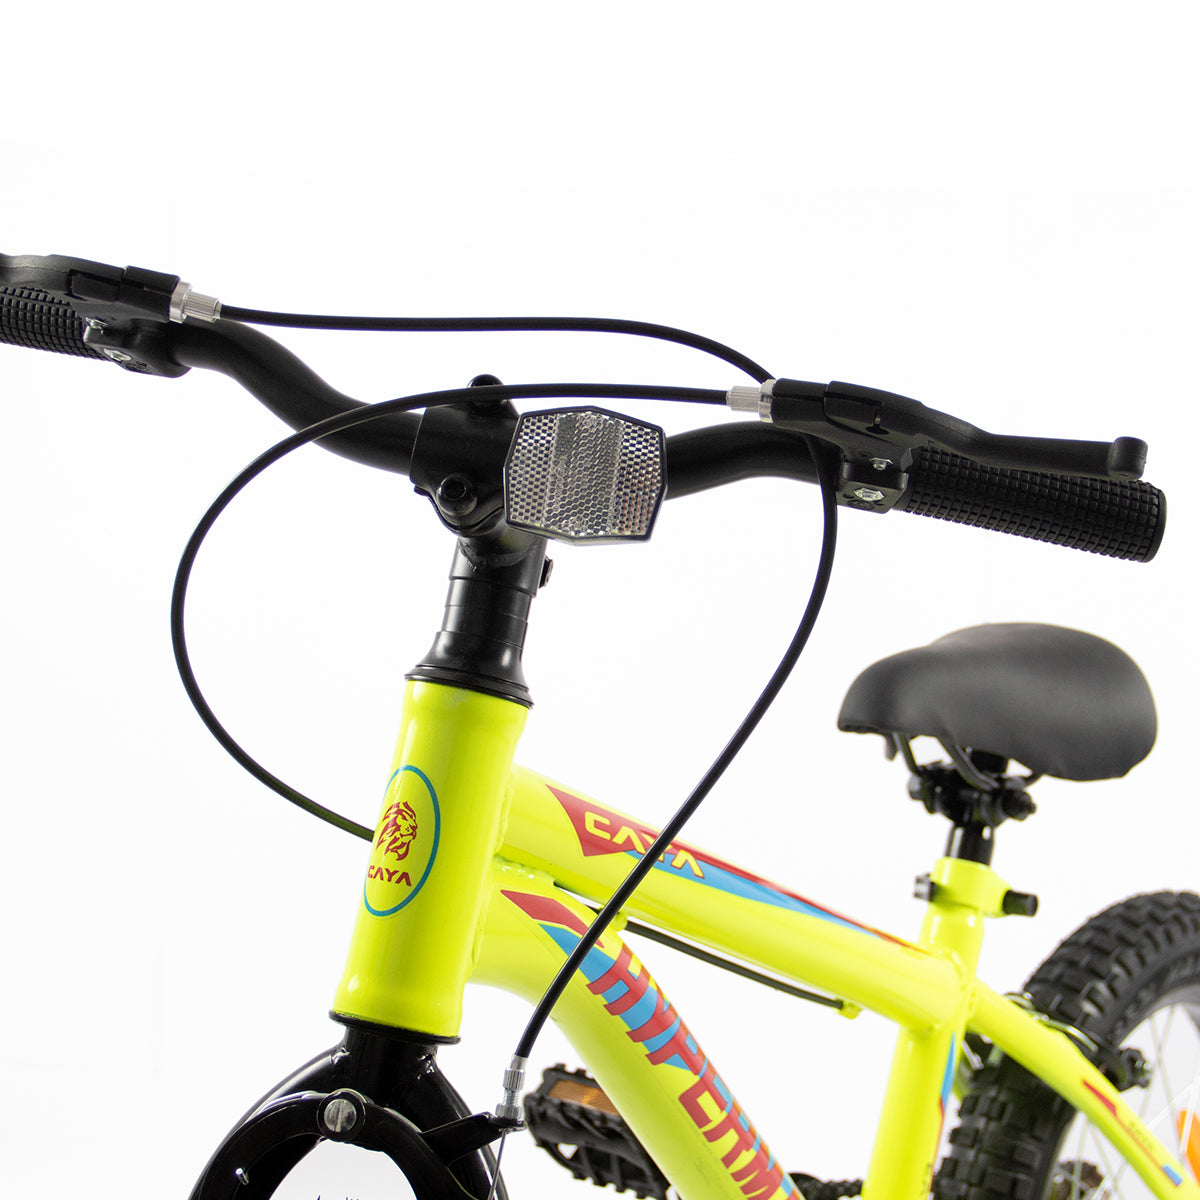 CAYA Hypermax 16 Kids BMX Bike